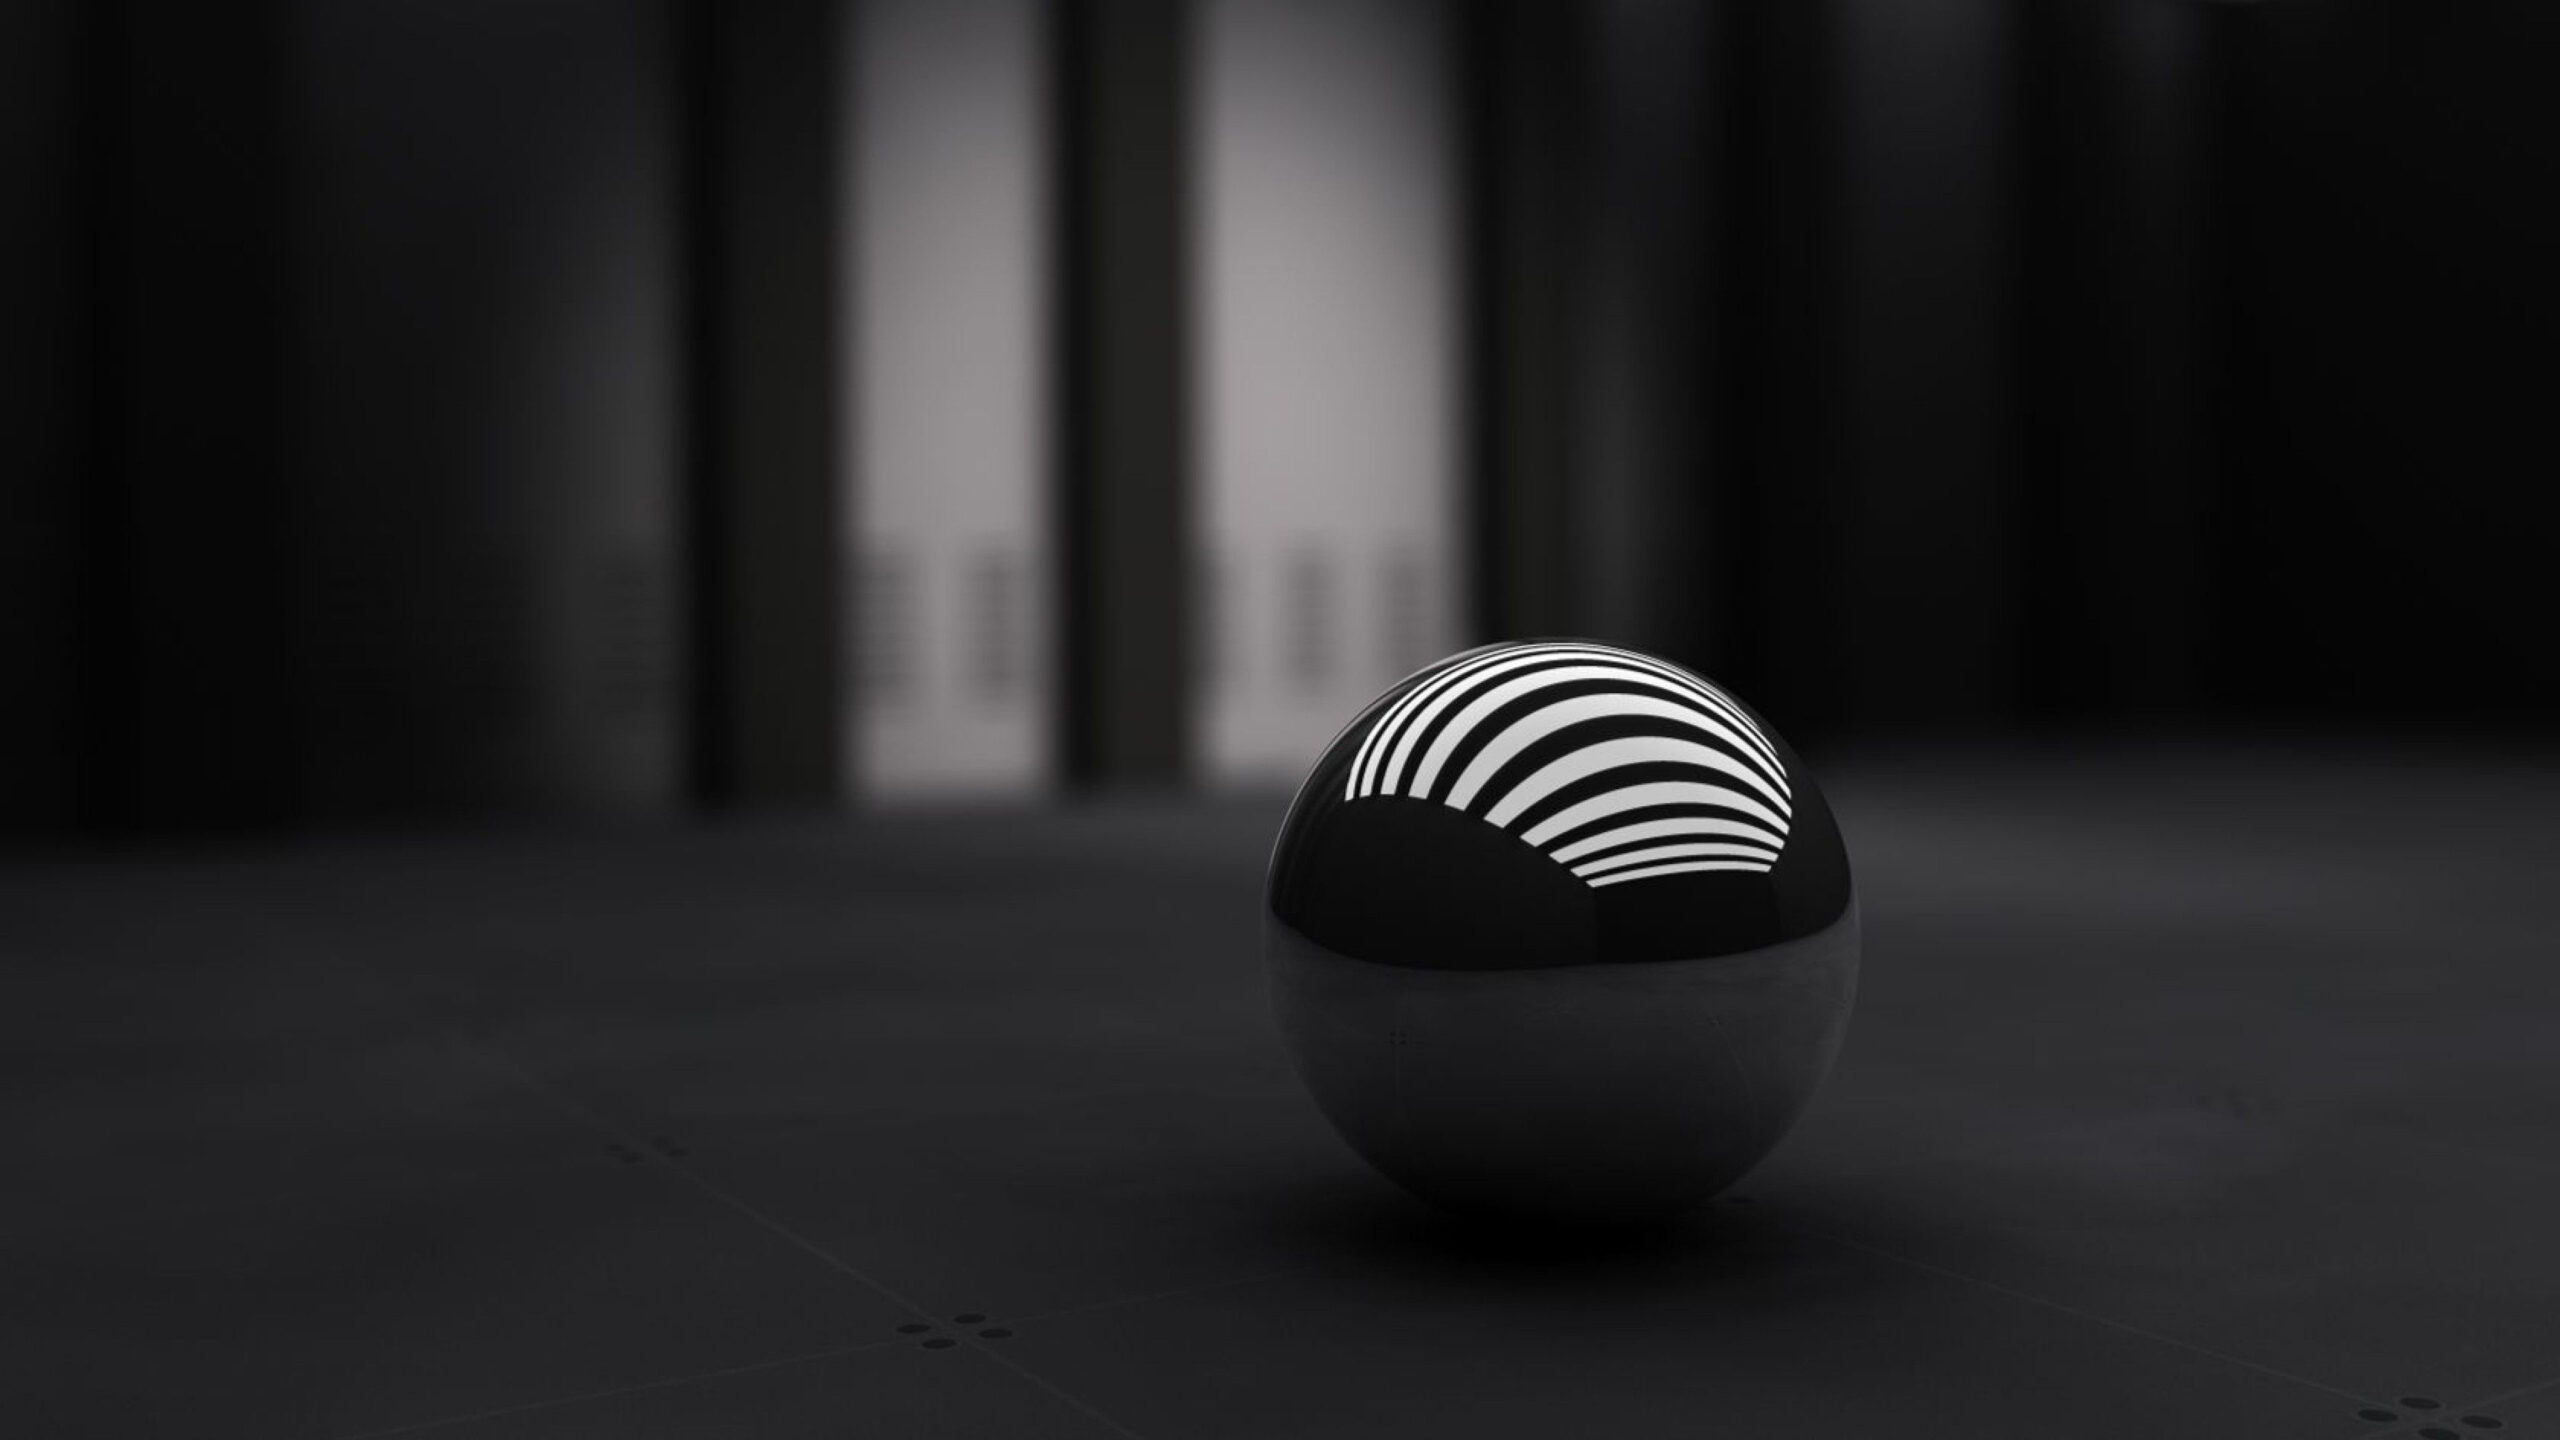 Black Ball With White Stripes On Floor K 2K Black